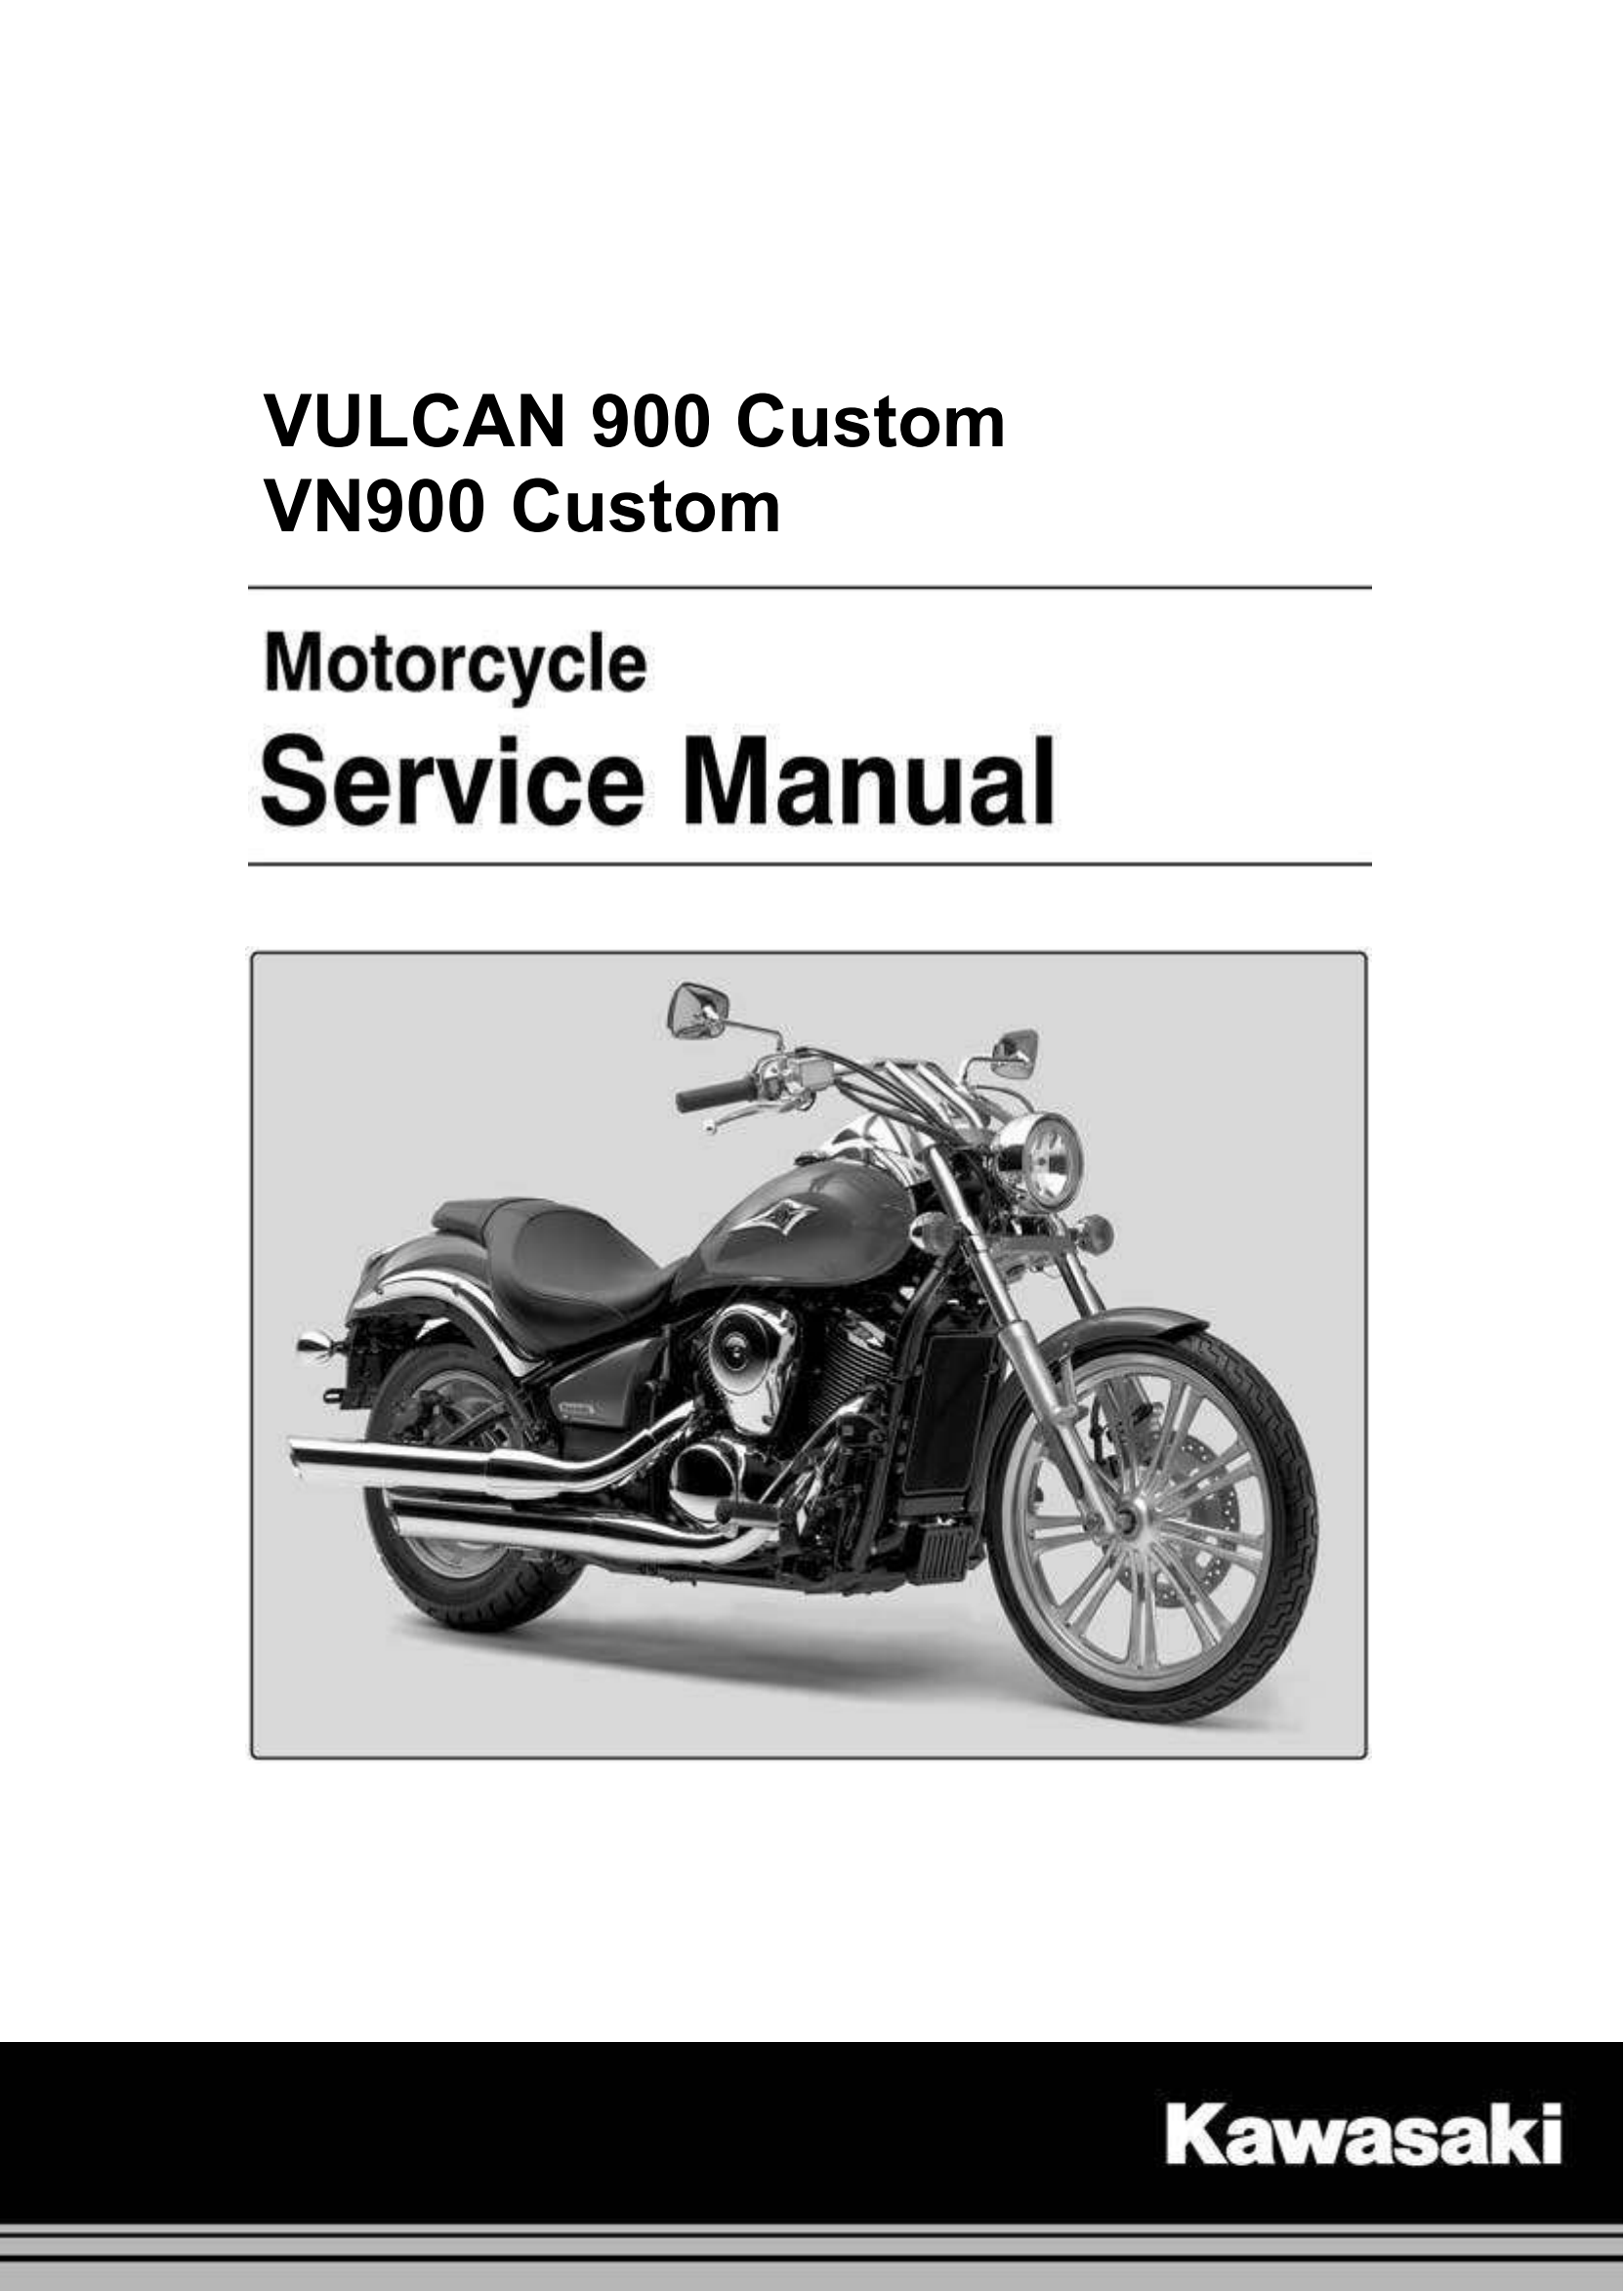 原版英文2007-2015年火神900 VULCAN 900 Custom vn900 维修手册插图